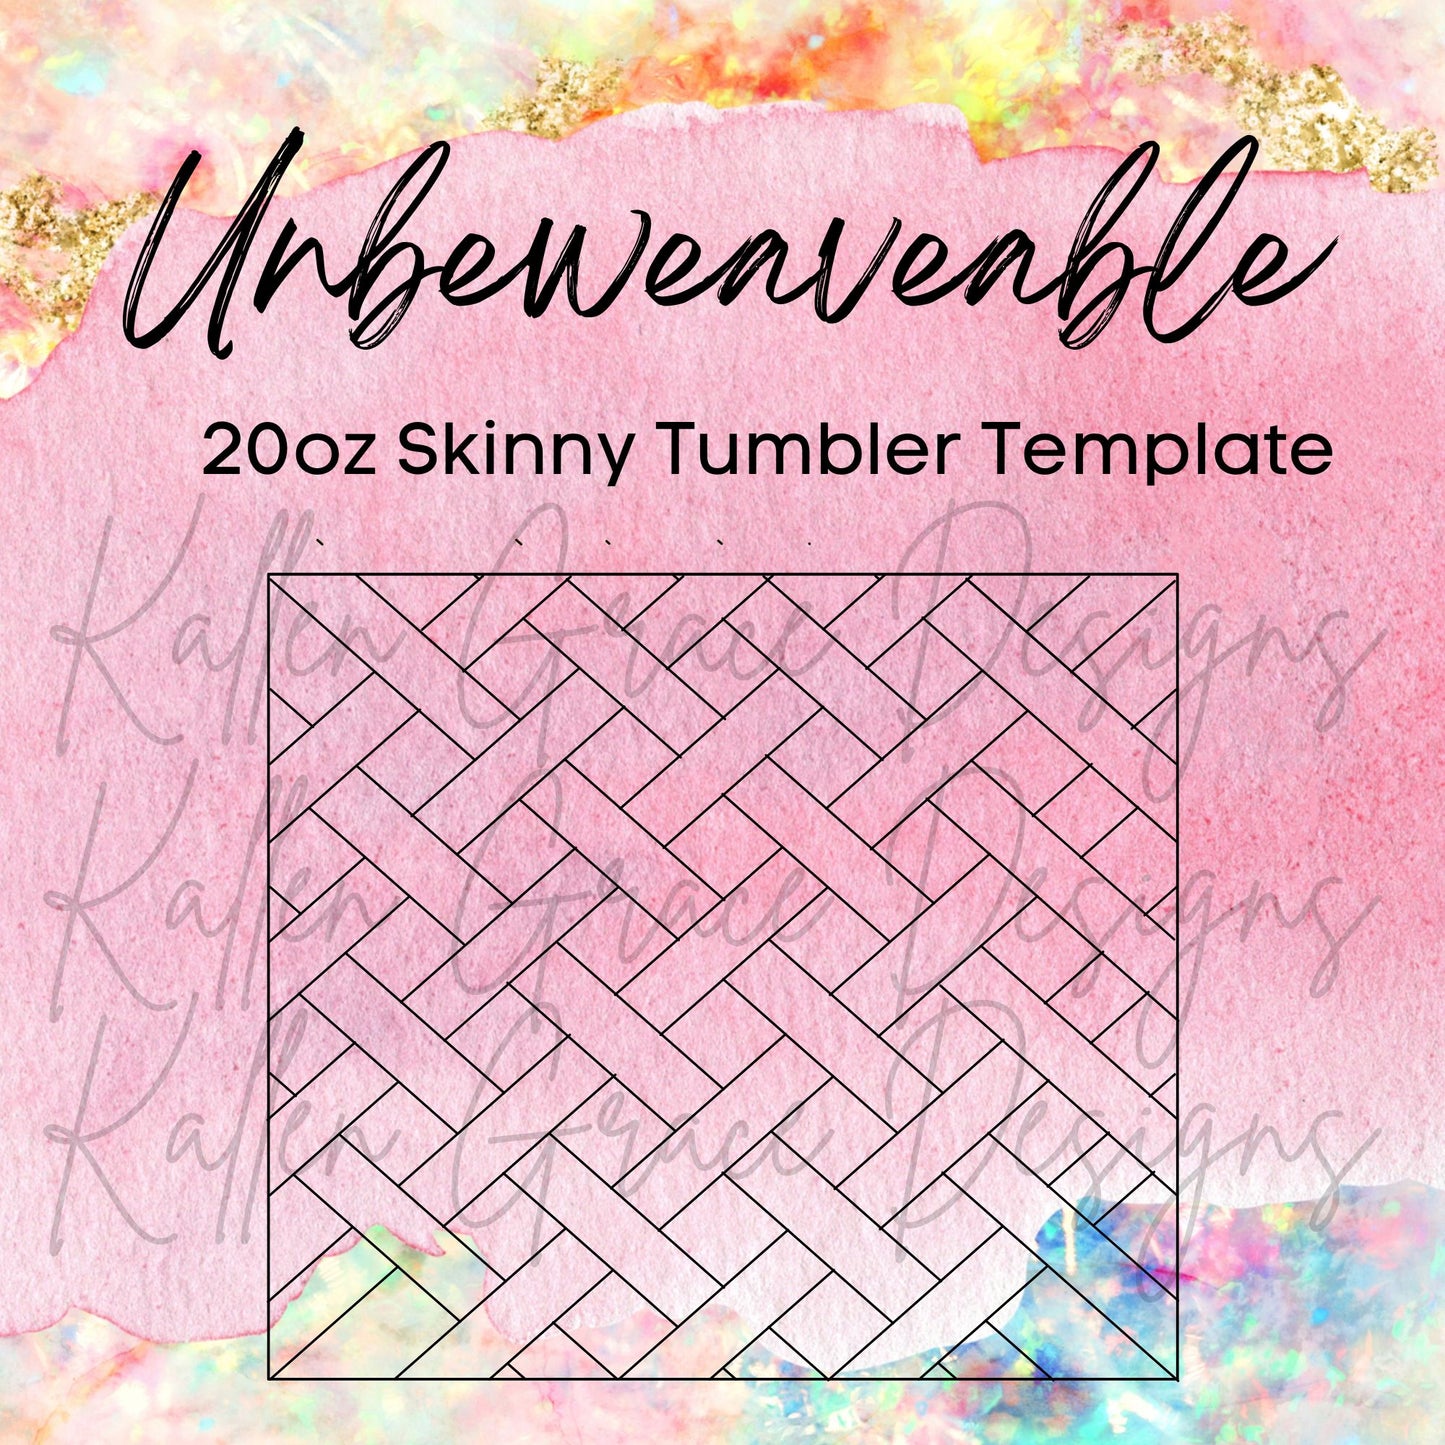 20oz Skinny Unbeweaveable Template